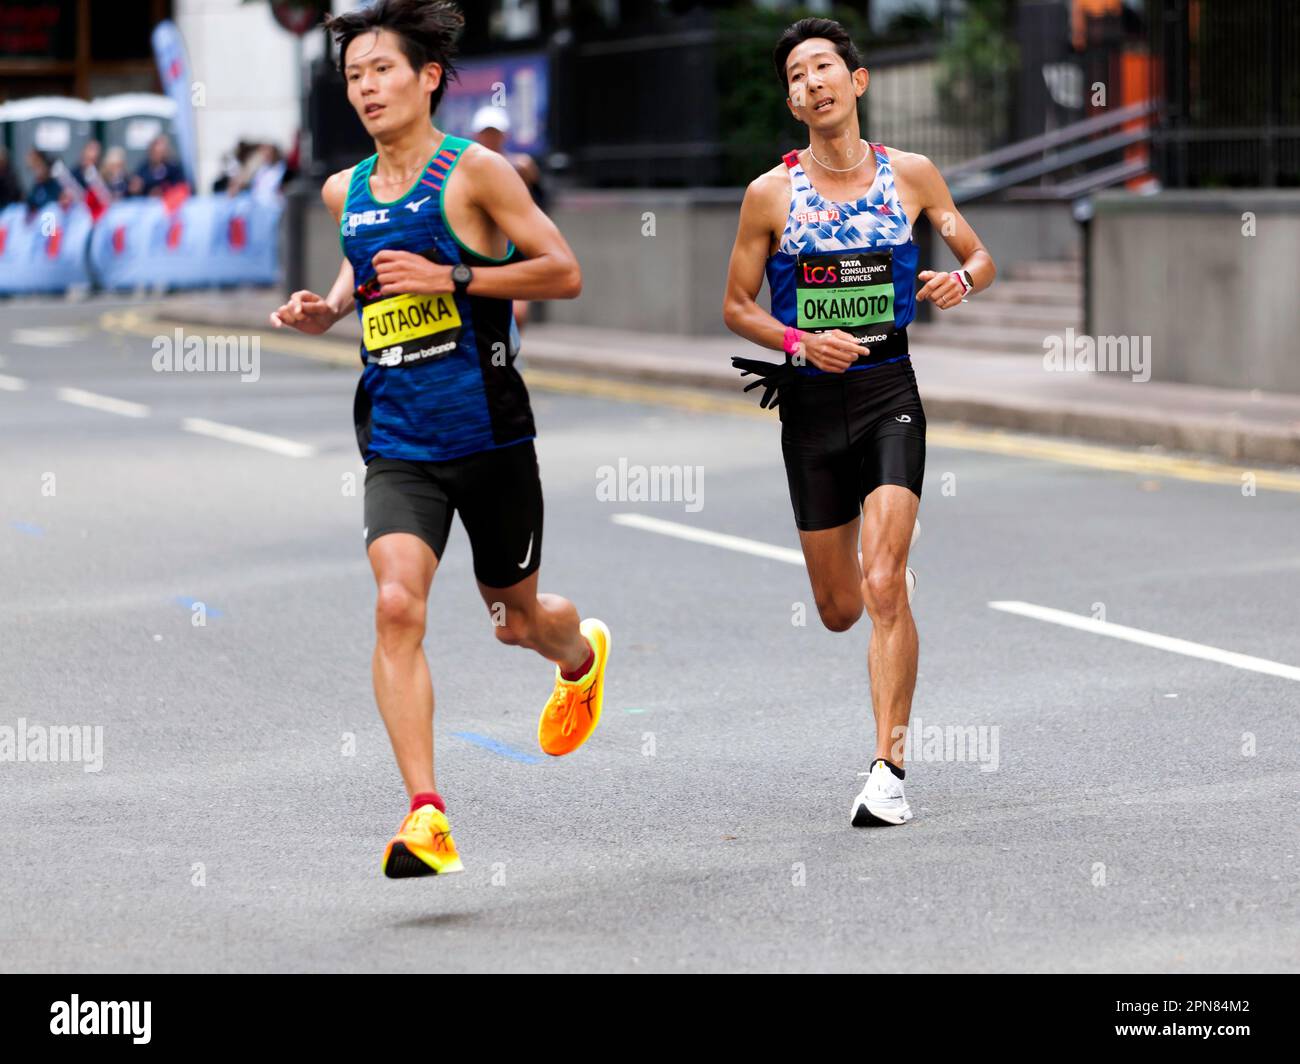 Kohei Futaoka et Naoki Okamoto, passant par Cabot Square sur leur chemin pour terminer 11th and13th respectivement dans le Marathon de Londres Men's Elite 2022 Banque D'Images